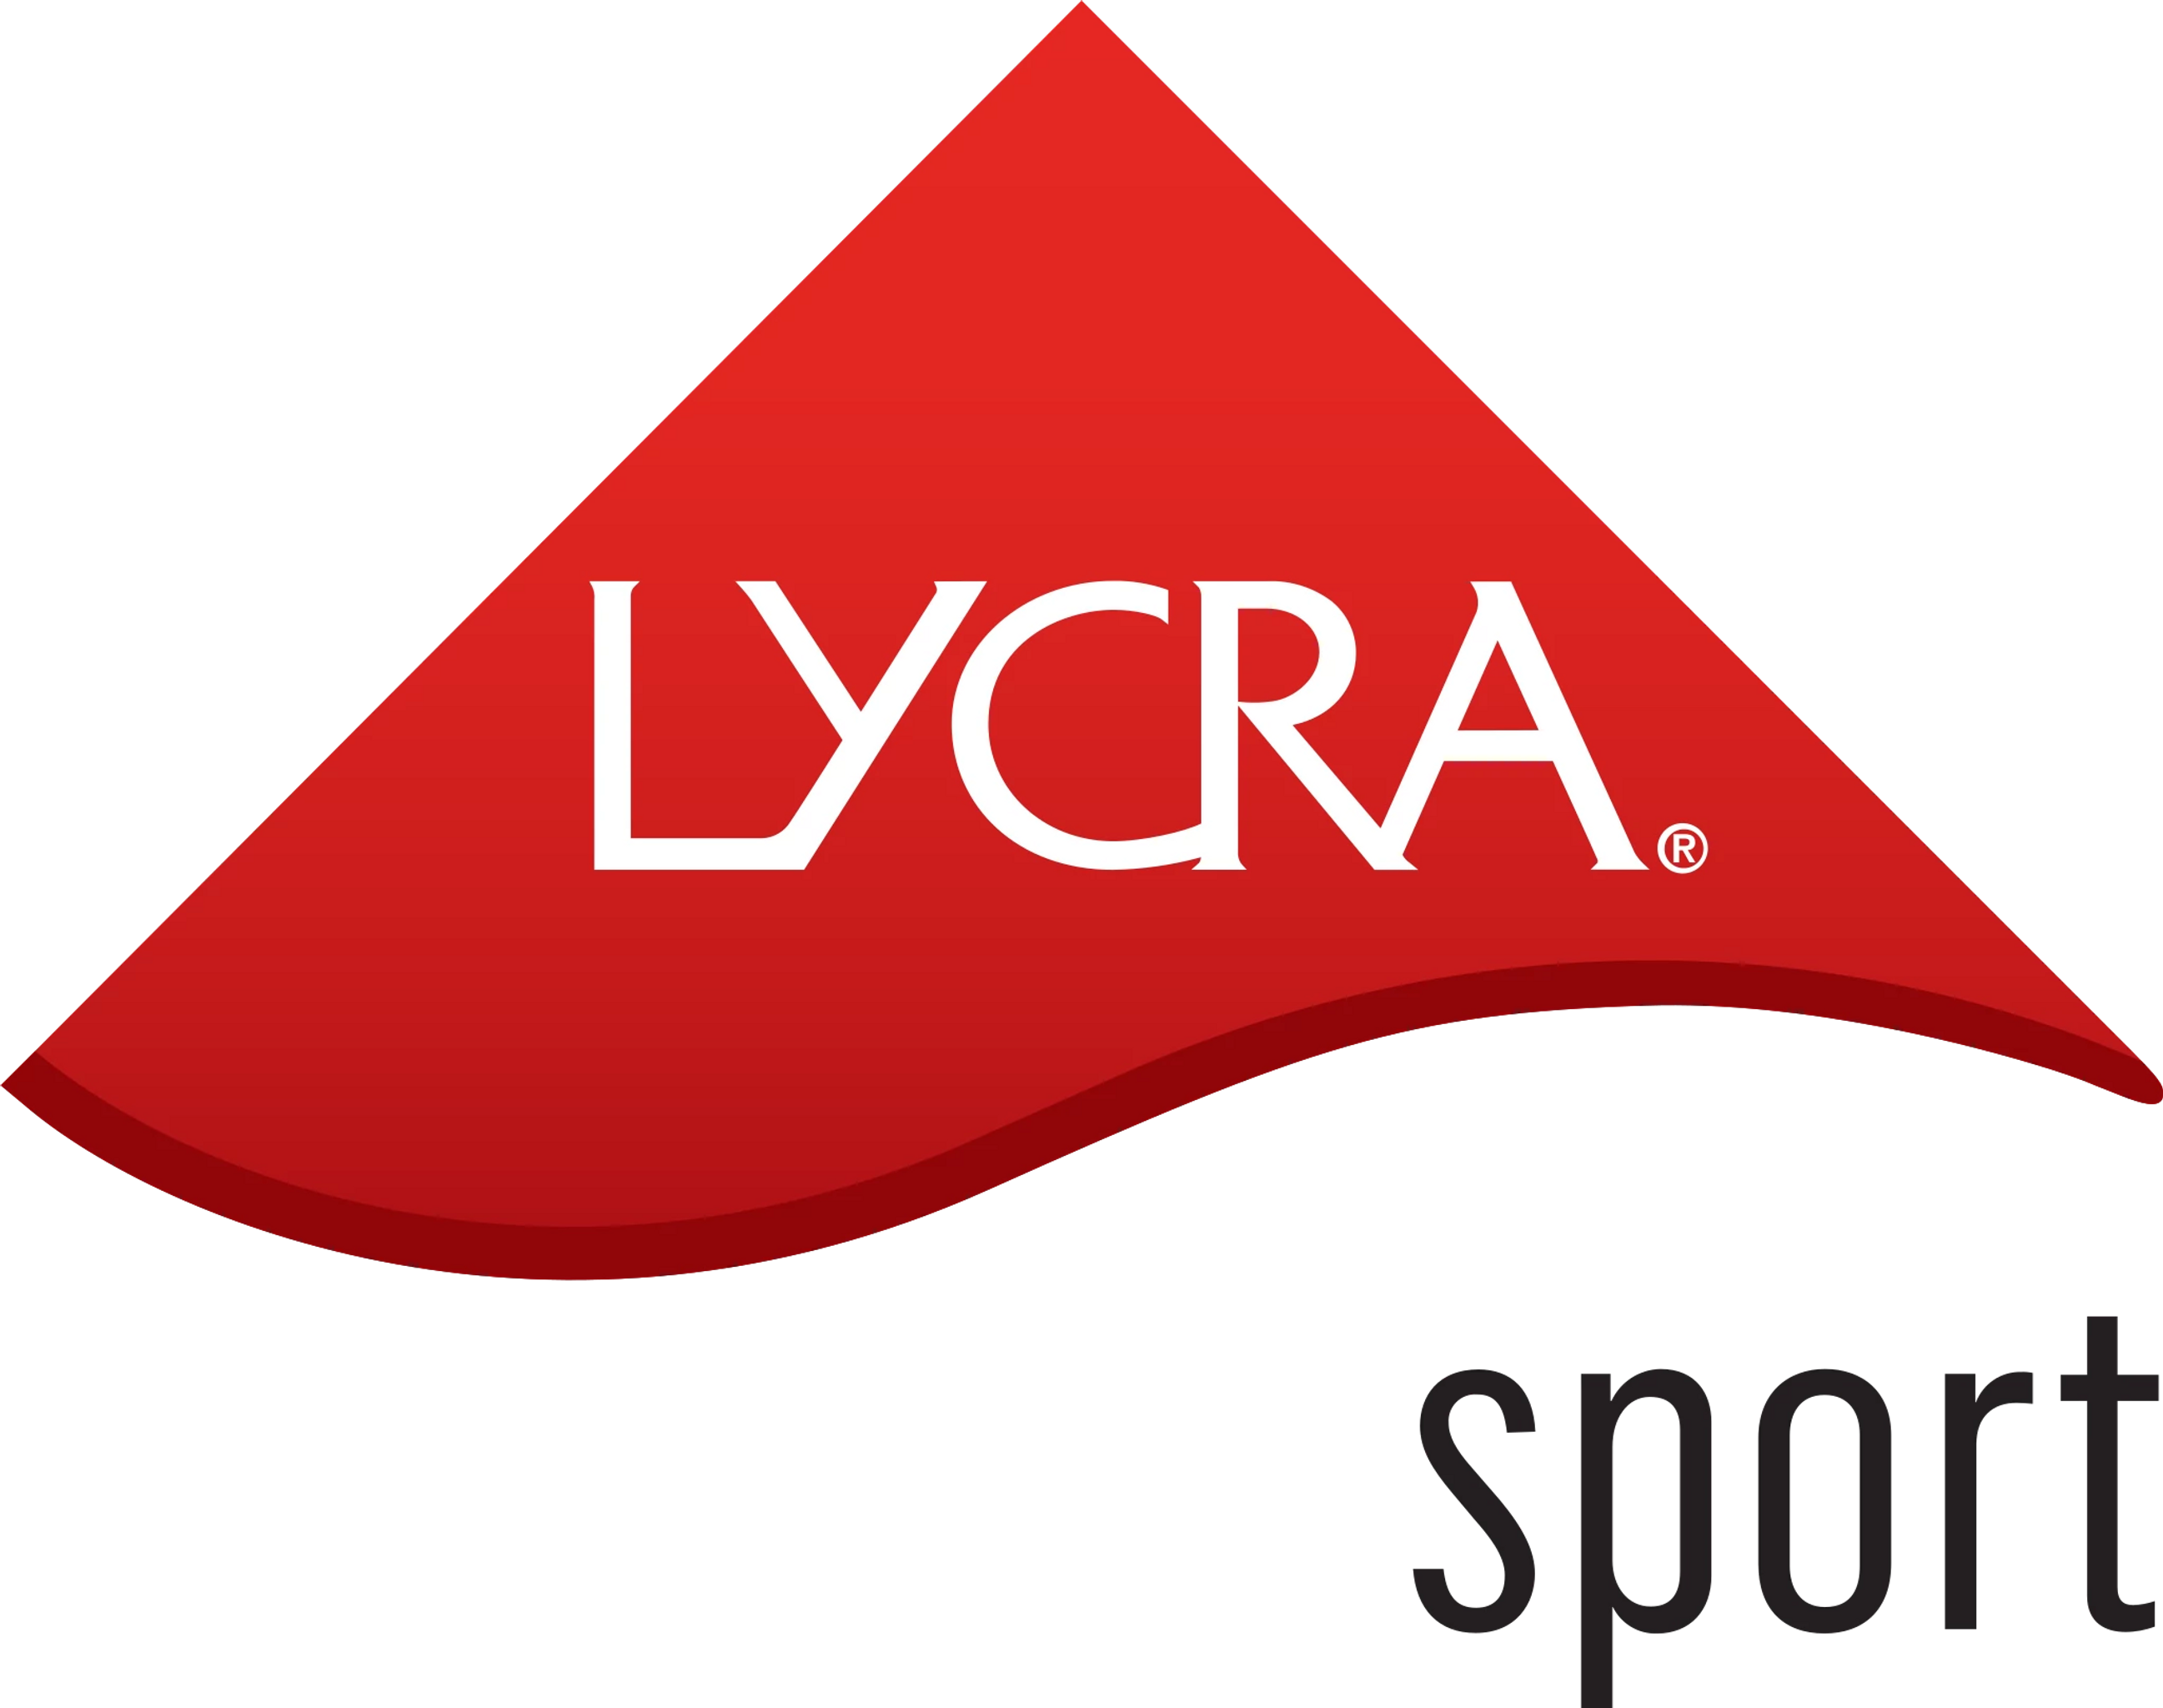 LYCRA® SPORT technology